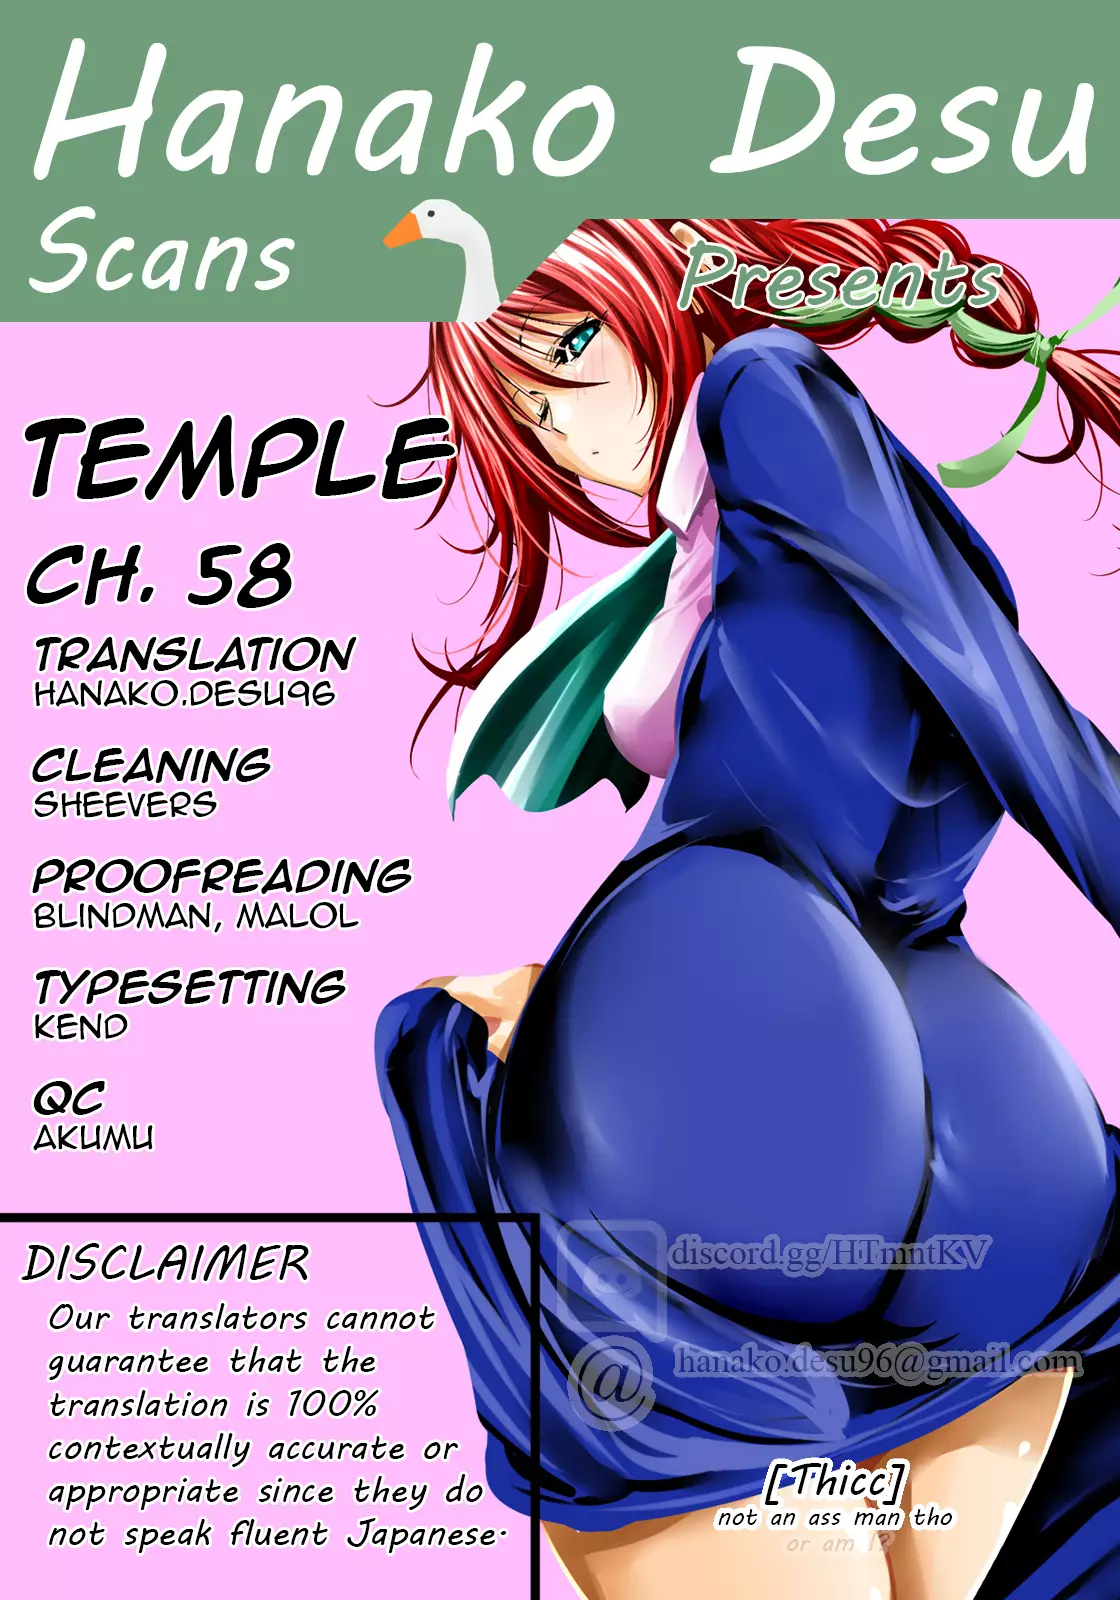 Temple - 58 page 1-a3e833fc